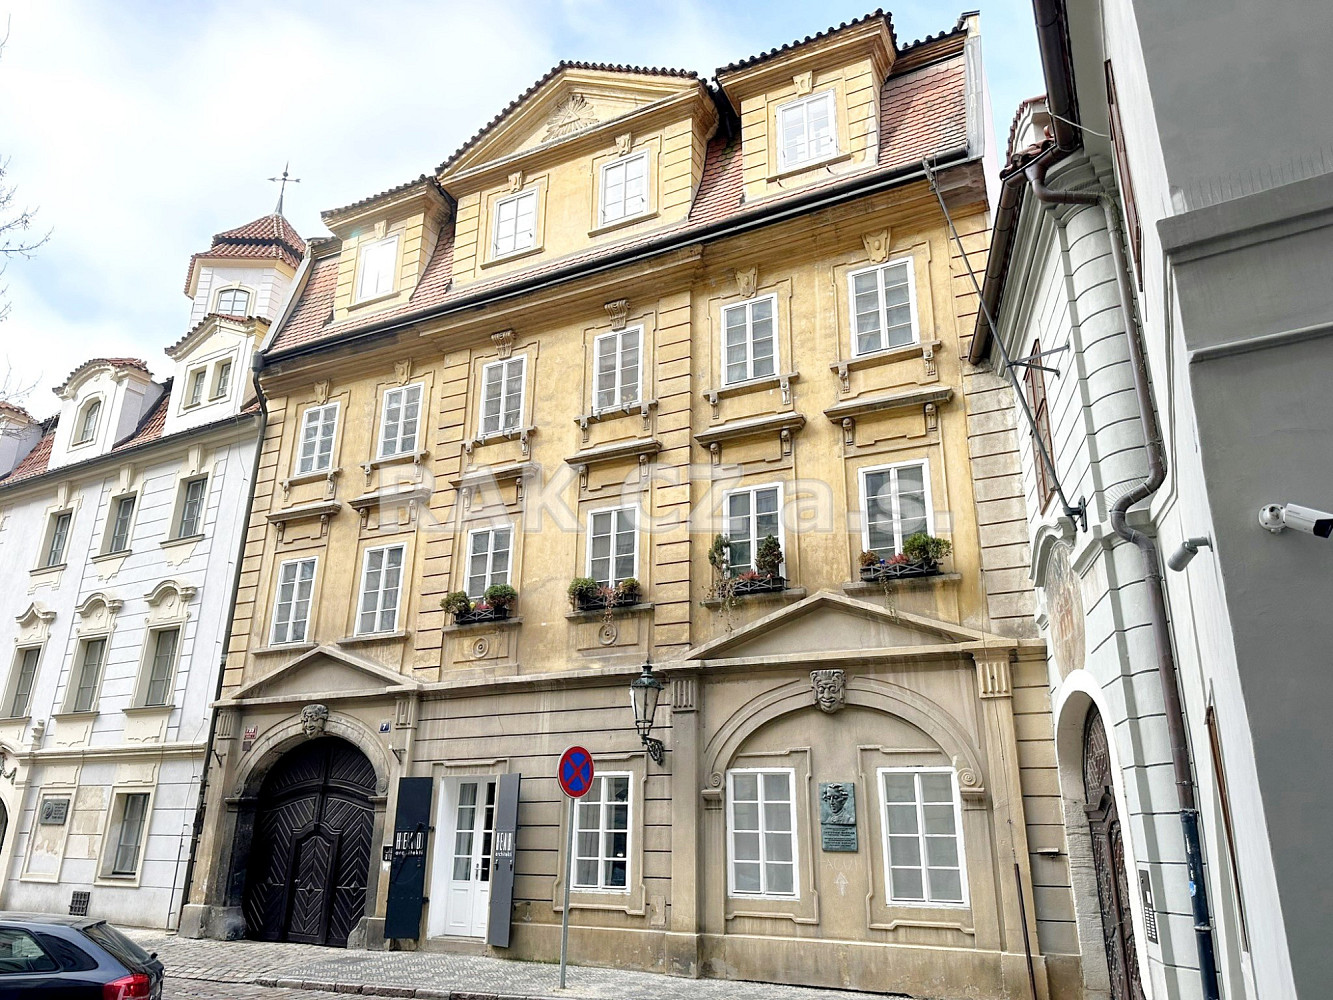 U obecního dvora, Praha 1 - Staré Město